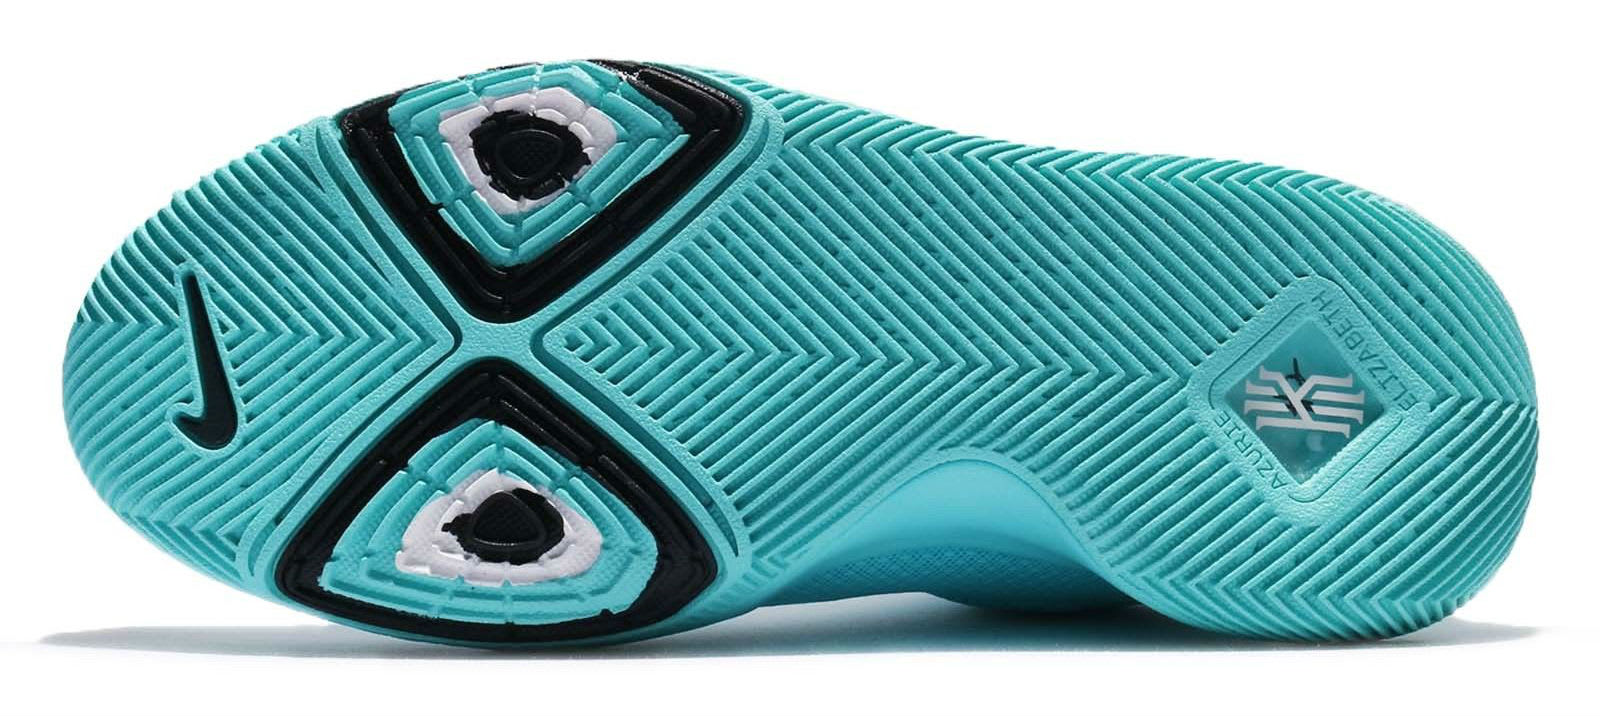 Nike Kyrie 3 GS Aqua Release Date Sole 859466-401